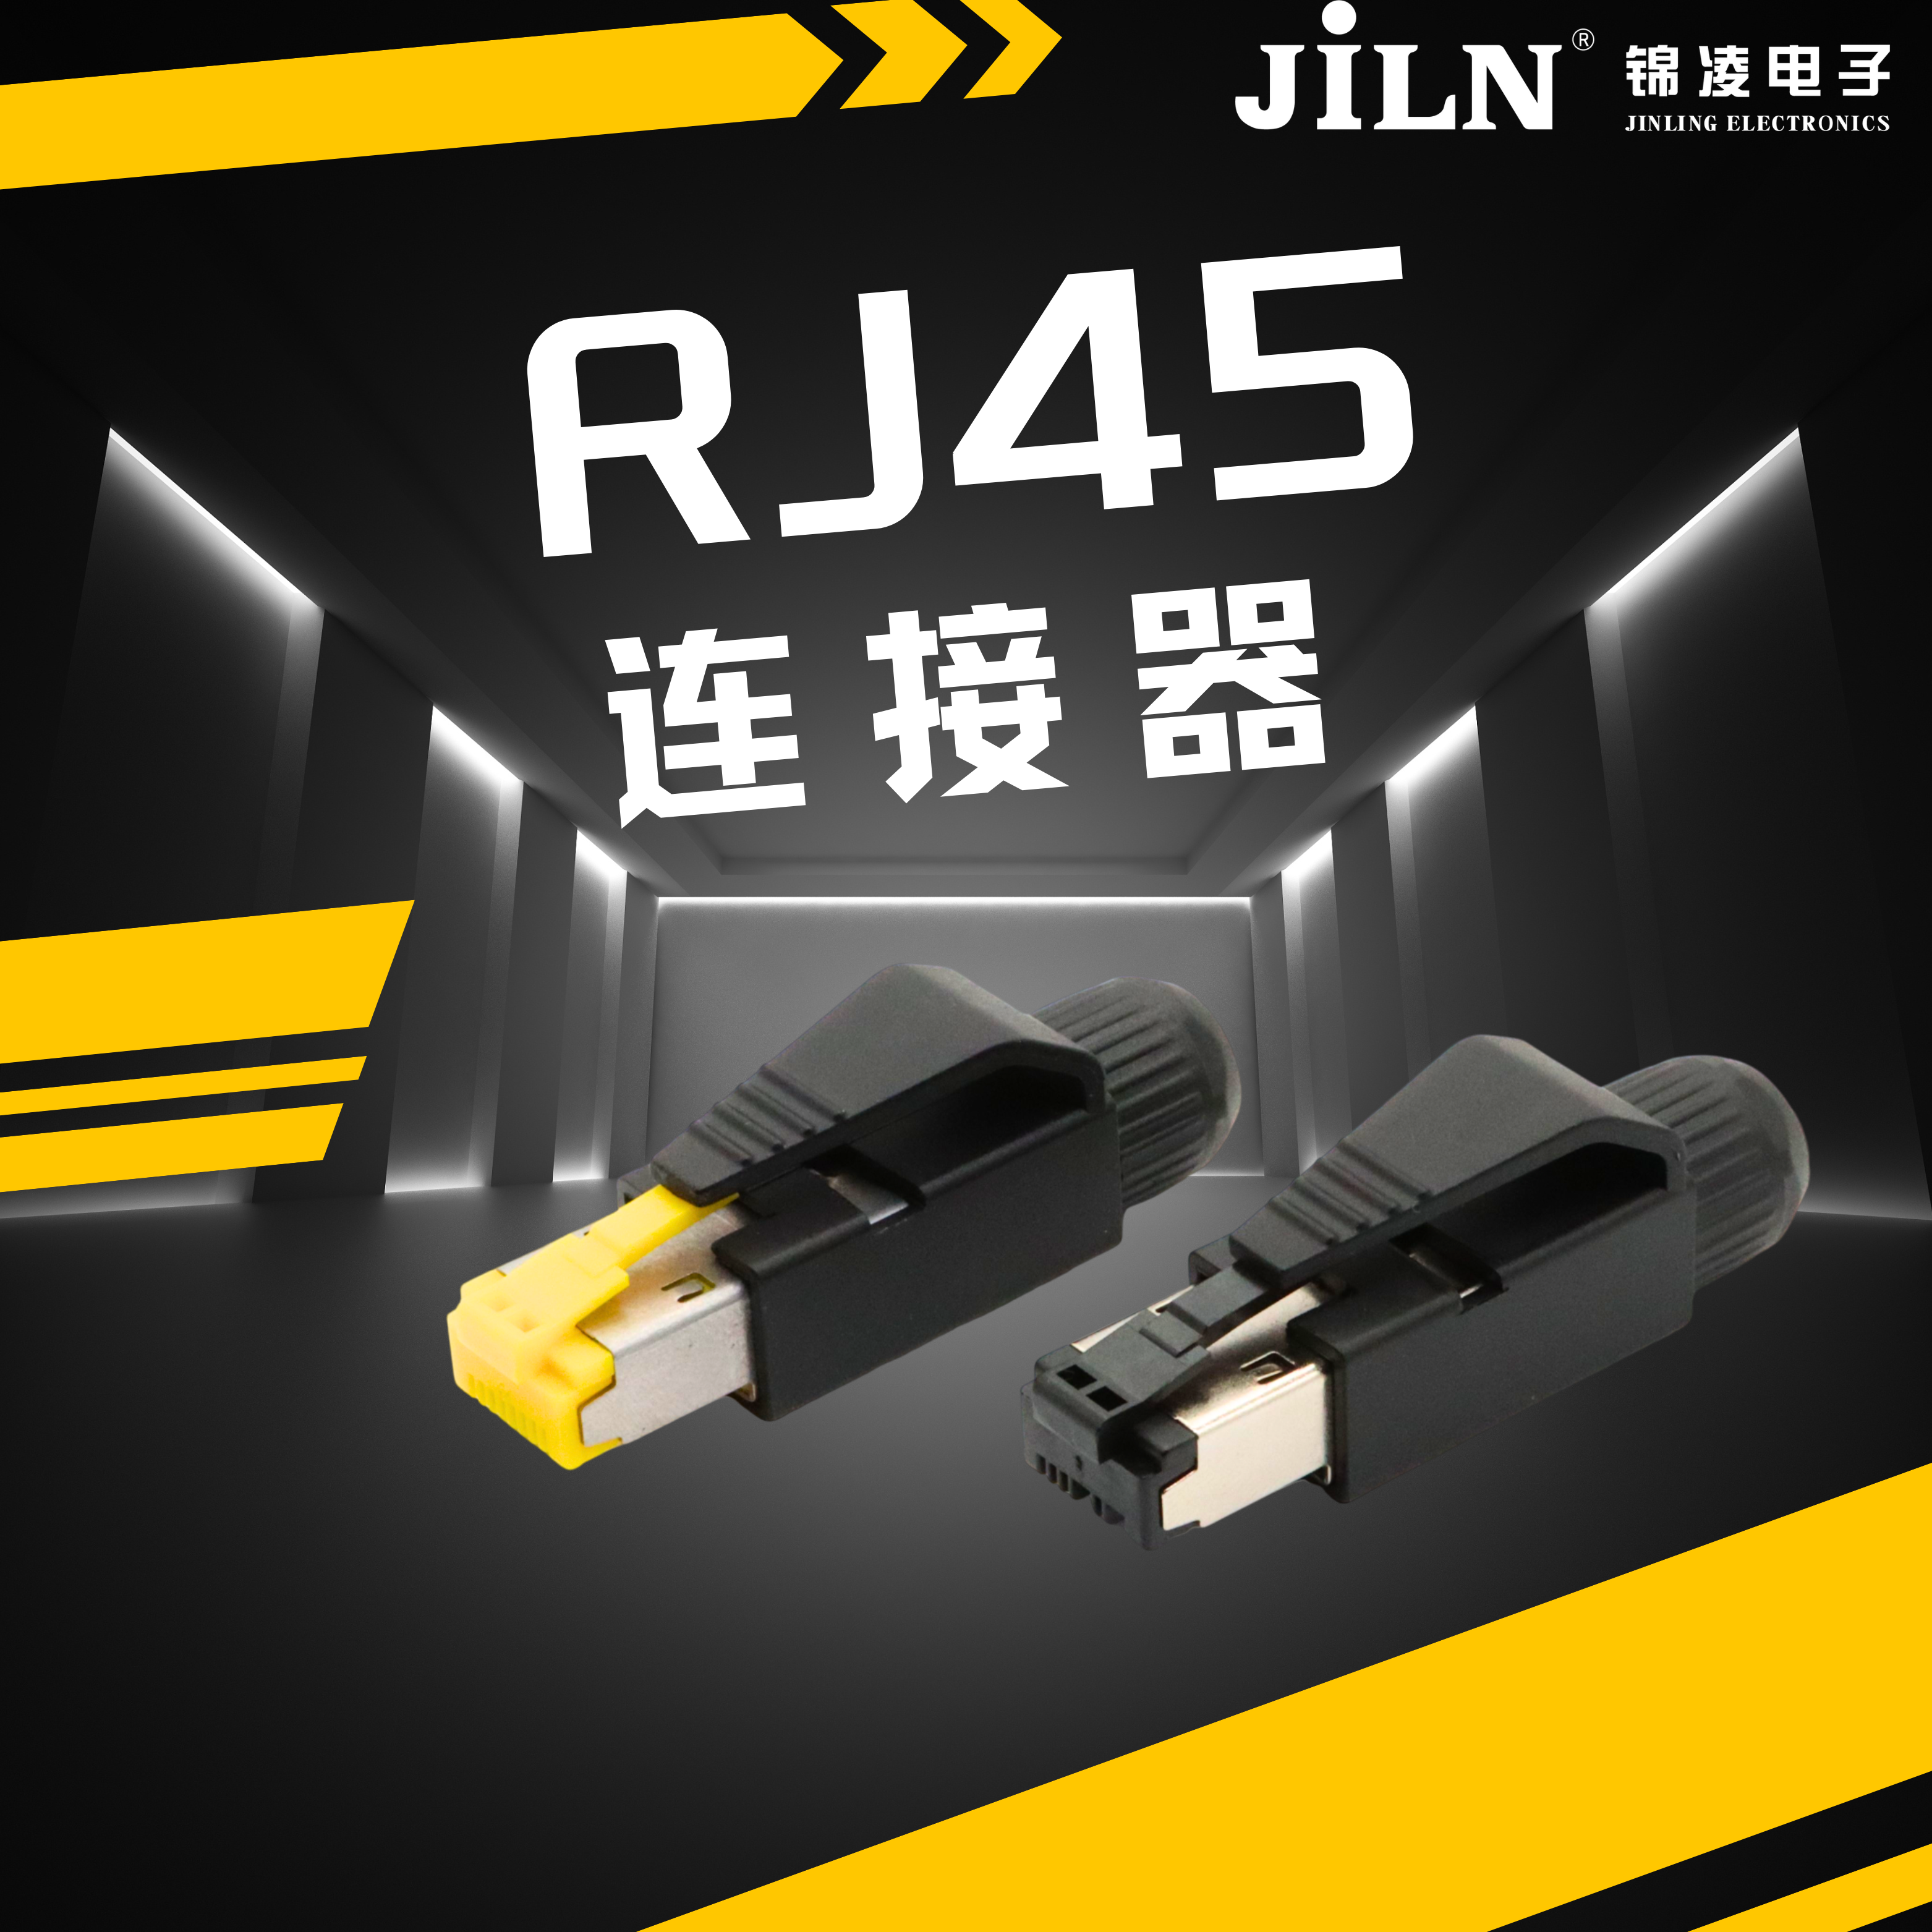 锦凌产品速递 | 插拔方便、可靠性高---RJ45连接器